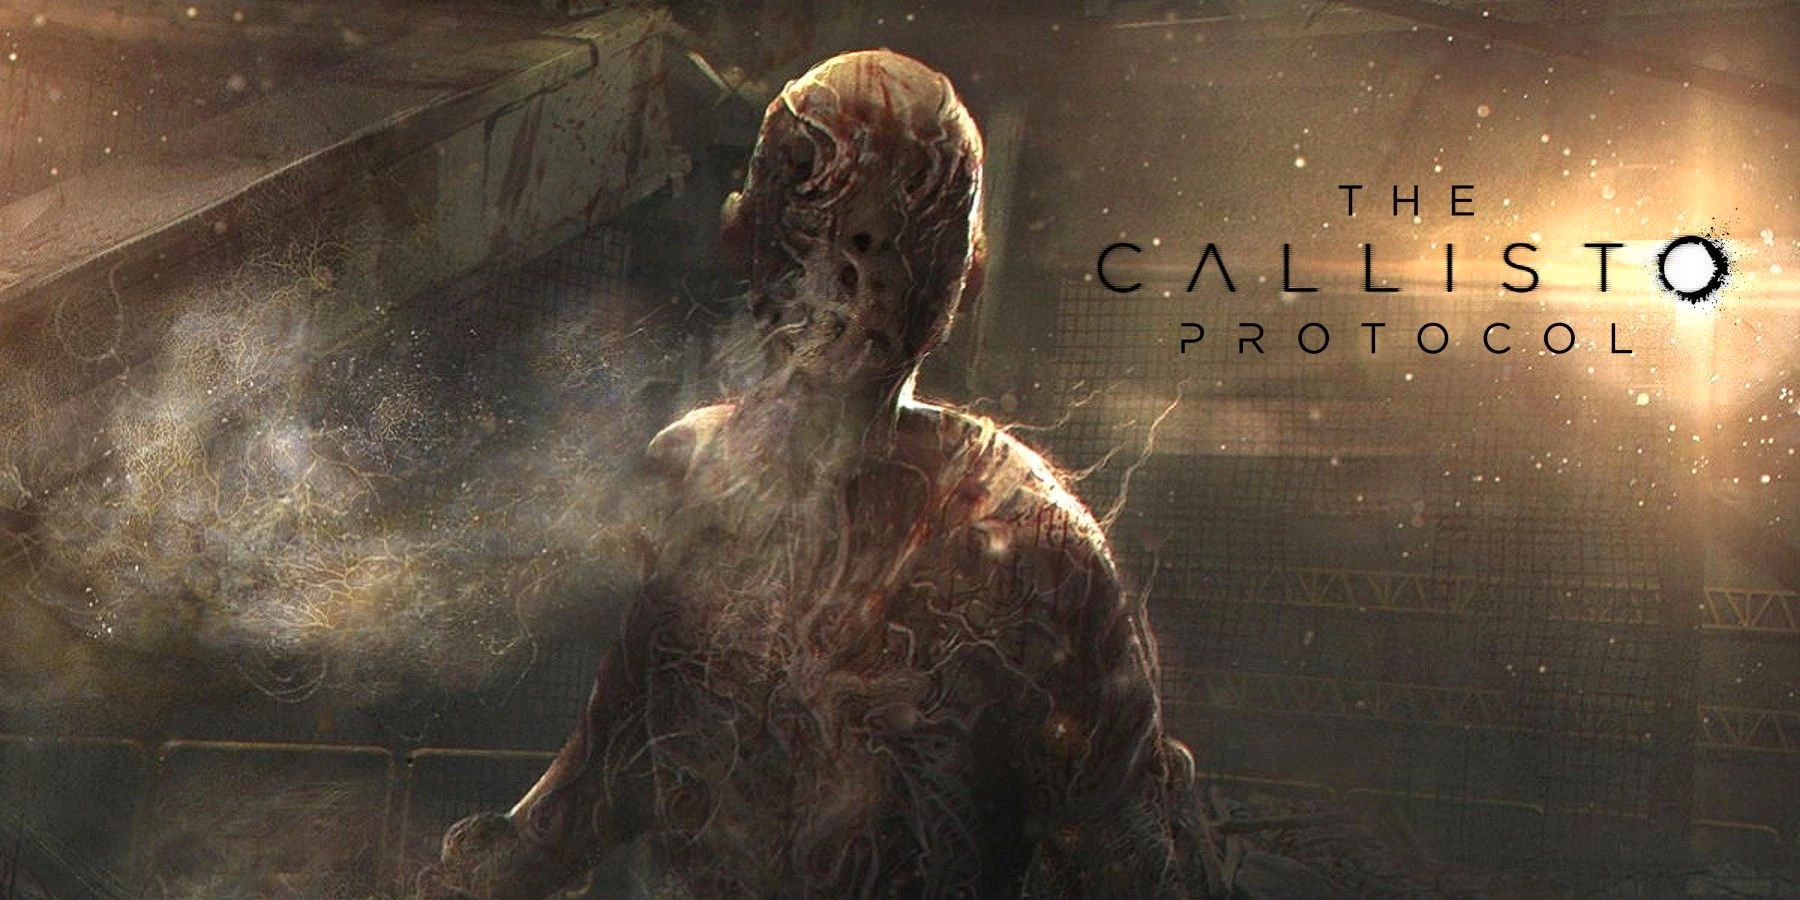 Une nouvelle vidéo de gameplay a été publiée pour The Callisto Protocol.